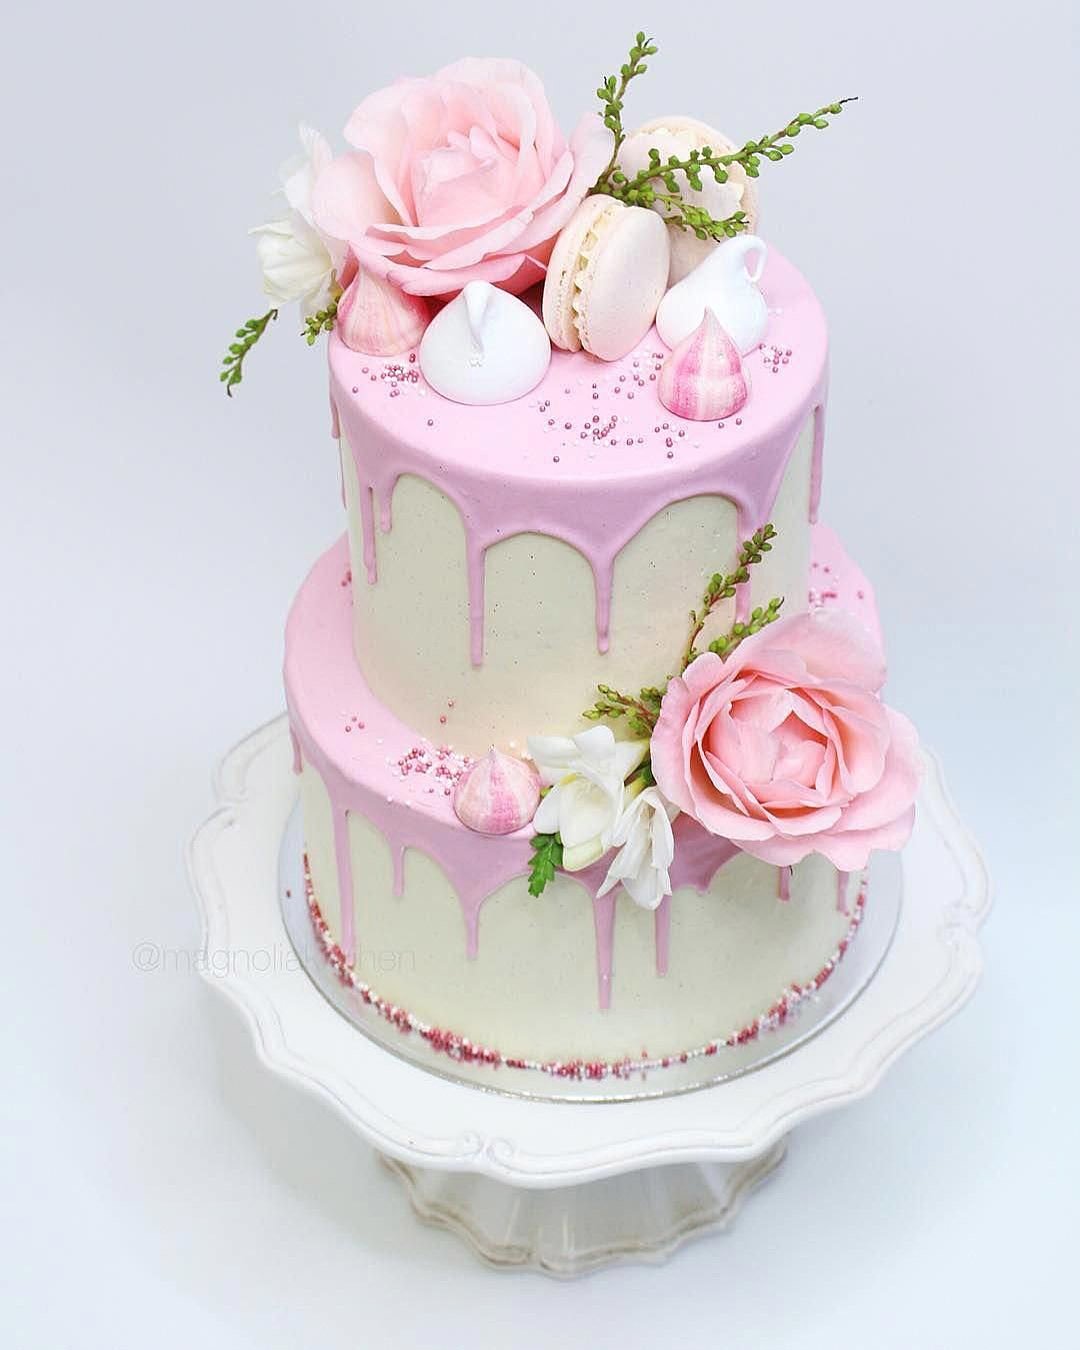 drip wedding cakes tender soft pinkwith flowers macaroons